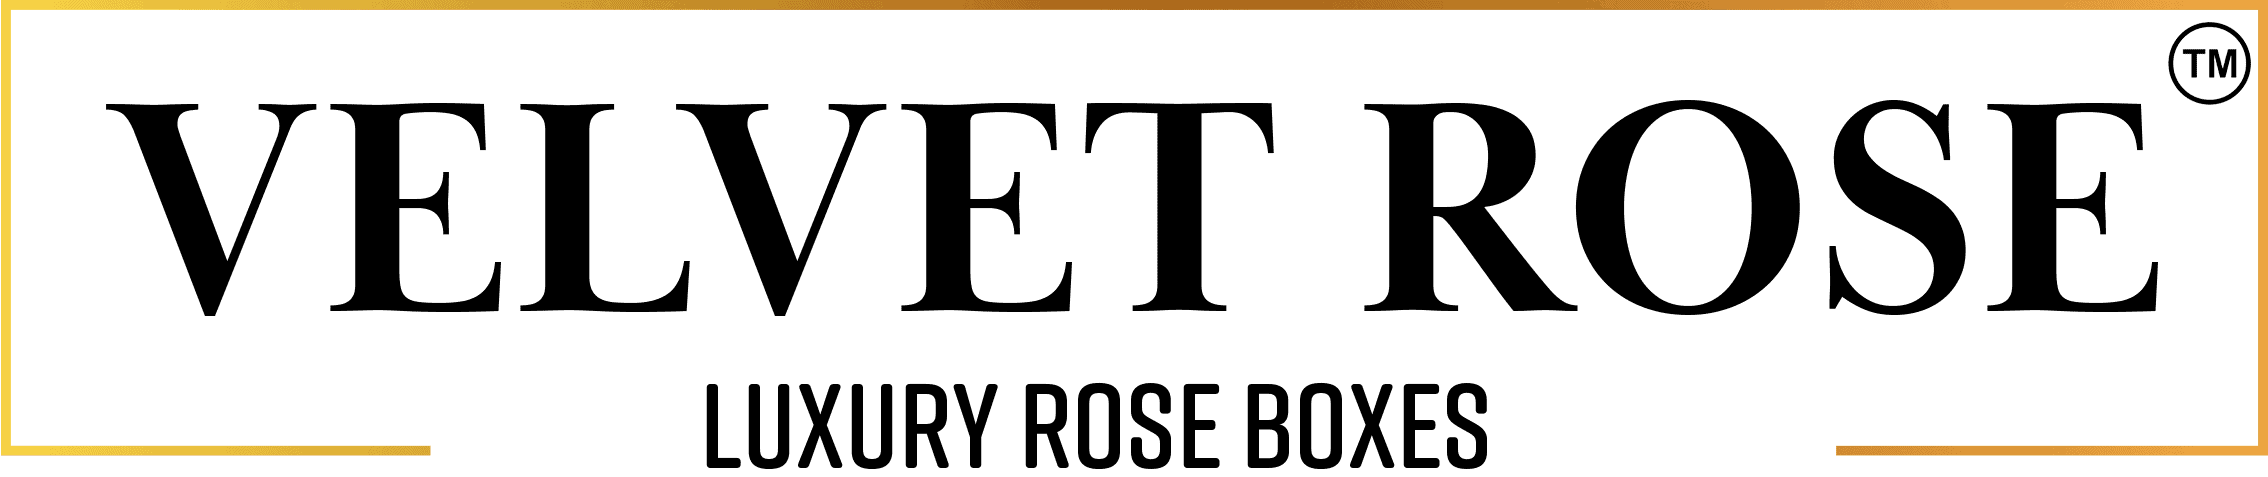 Velvet Rose - Luxury Rose Boxes